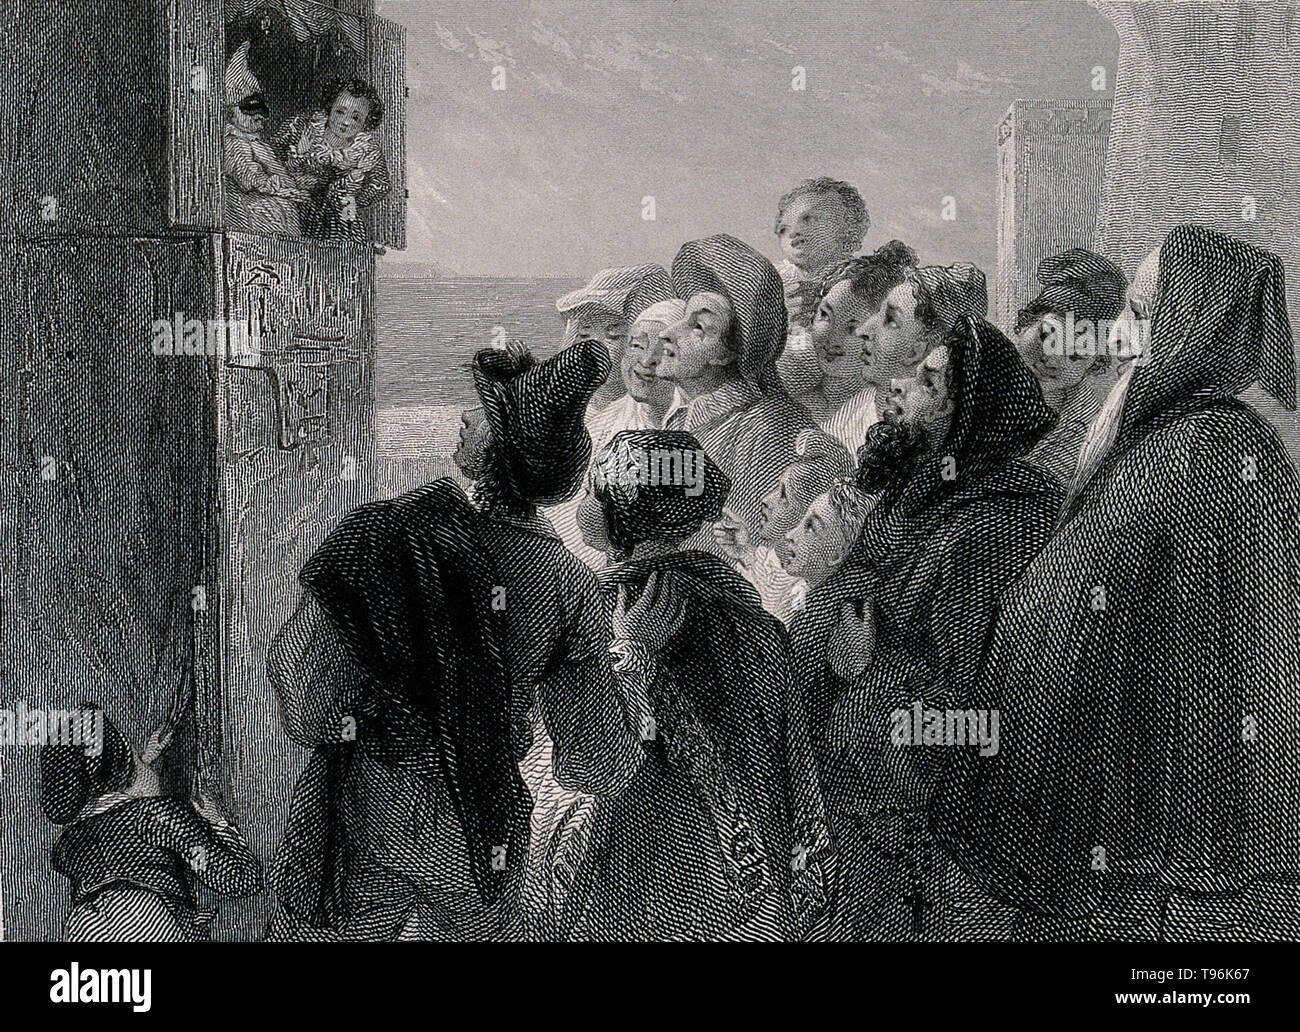 Eine Masse von Menschen um einen Standplatz in der Straße versammelt ein Kasperletheater zu beobachten, zeigen in Neapel, Italien. Stich von J. Goodyear nach T. Uwins, 1834. Stockfoto